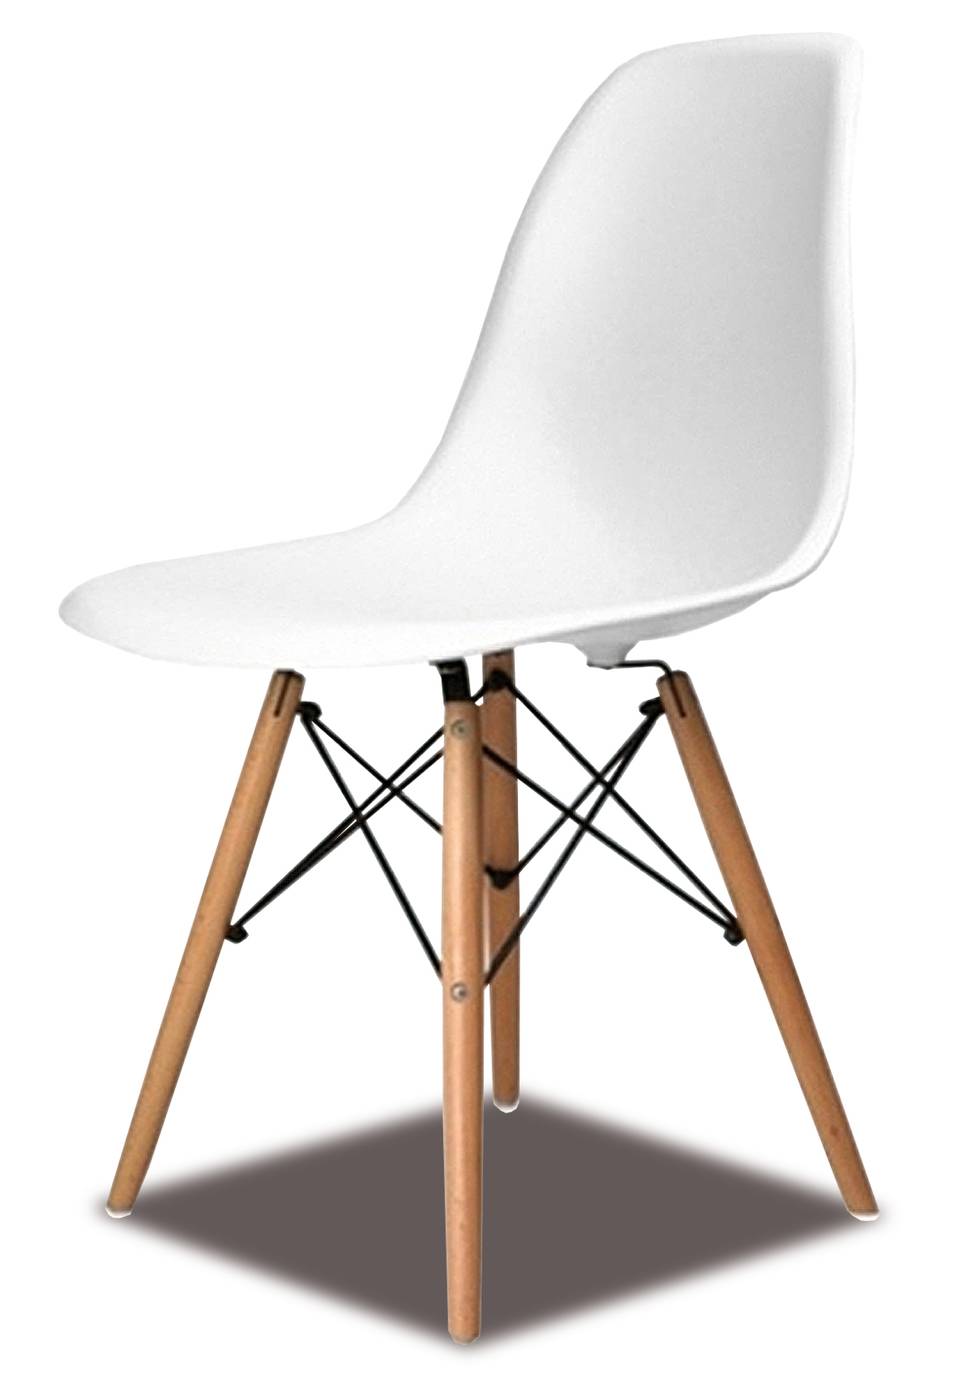 Silla de comedor. Patas de madera, con respaldo y asiento de polipropileno color blanco.